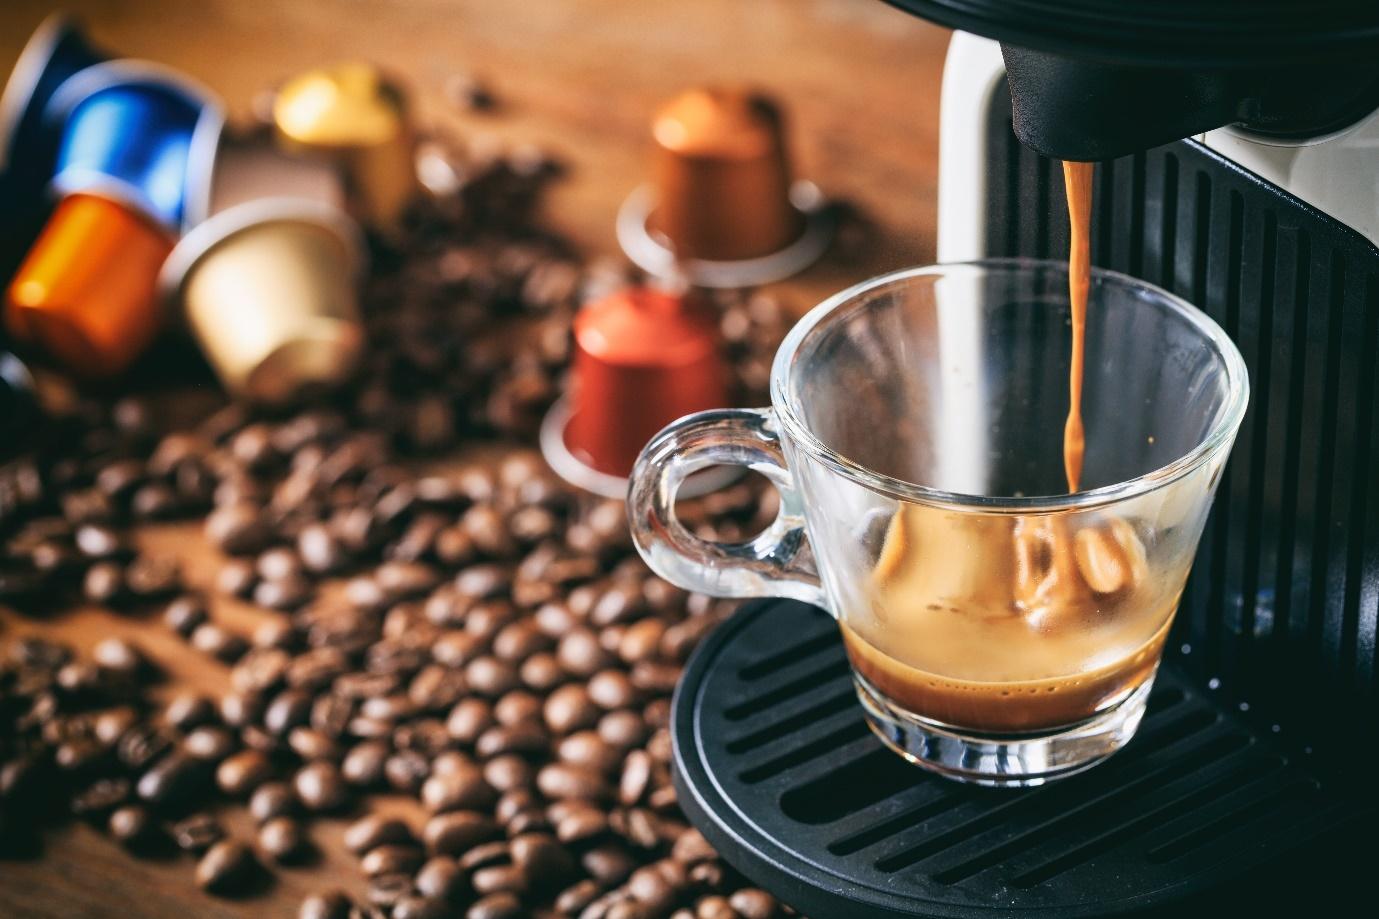 Quelle origine et arôme de café choisir ?